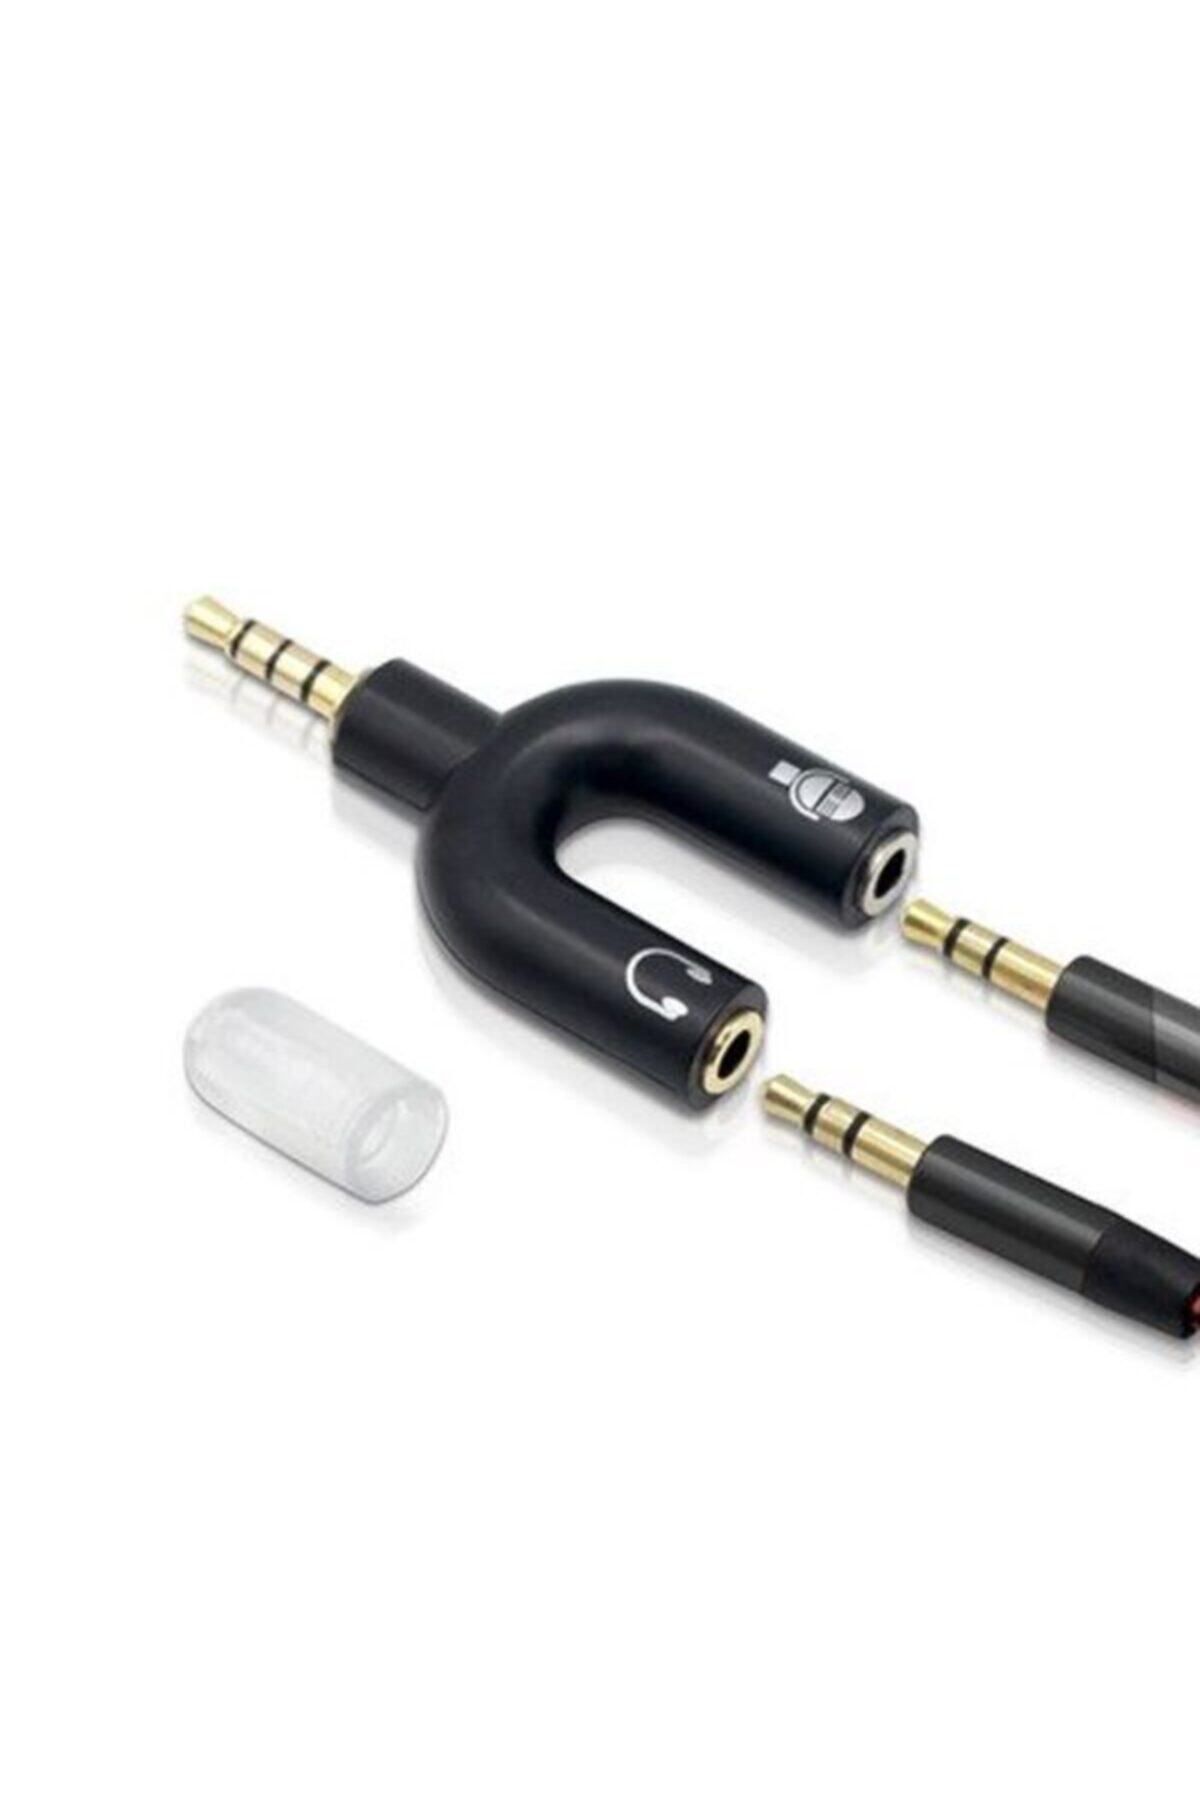 Engpars Kulaklık Mikrofon Ayırıcı Çoklayıcı 3.5mm Splitter Switch Stereo Dönüştürücü